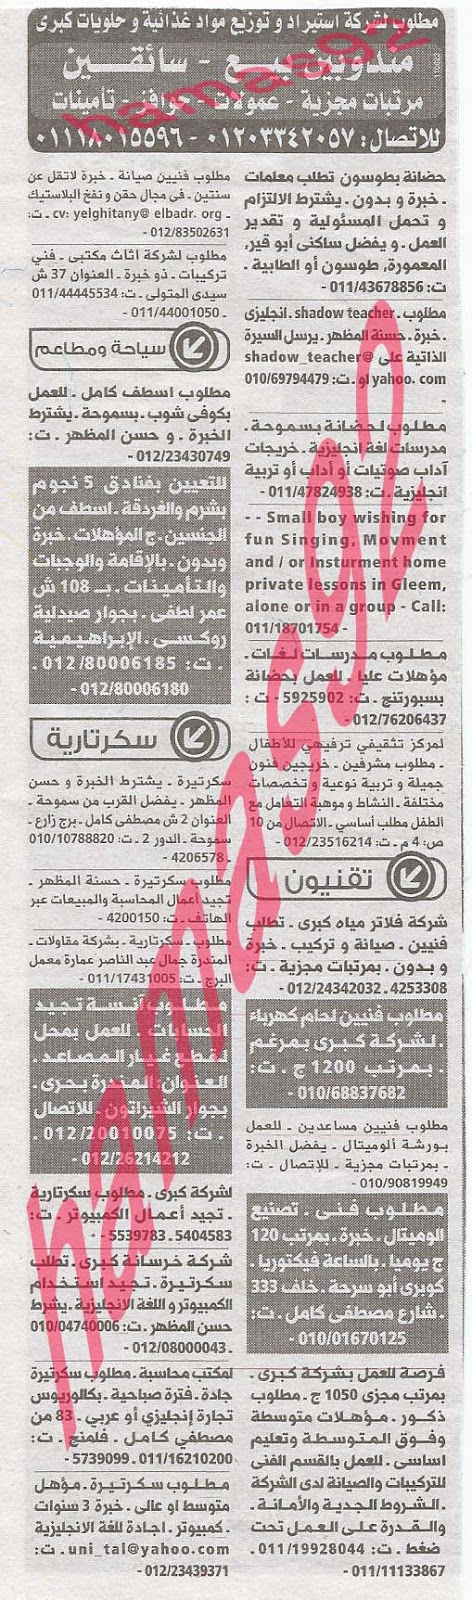 وظائف خالية من جريدة الوسيط الاسكندرية الثلاثاء 03-09-2013 %D9%88+%D8%B3+%D8%B3+2